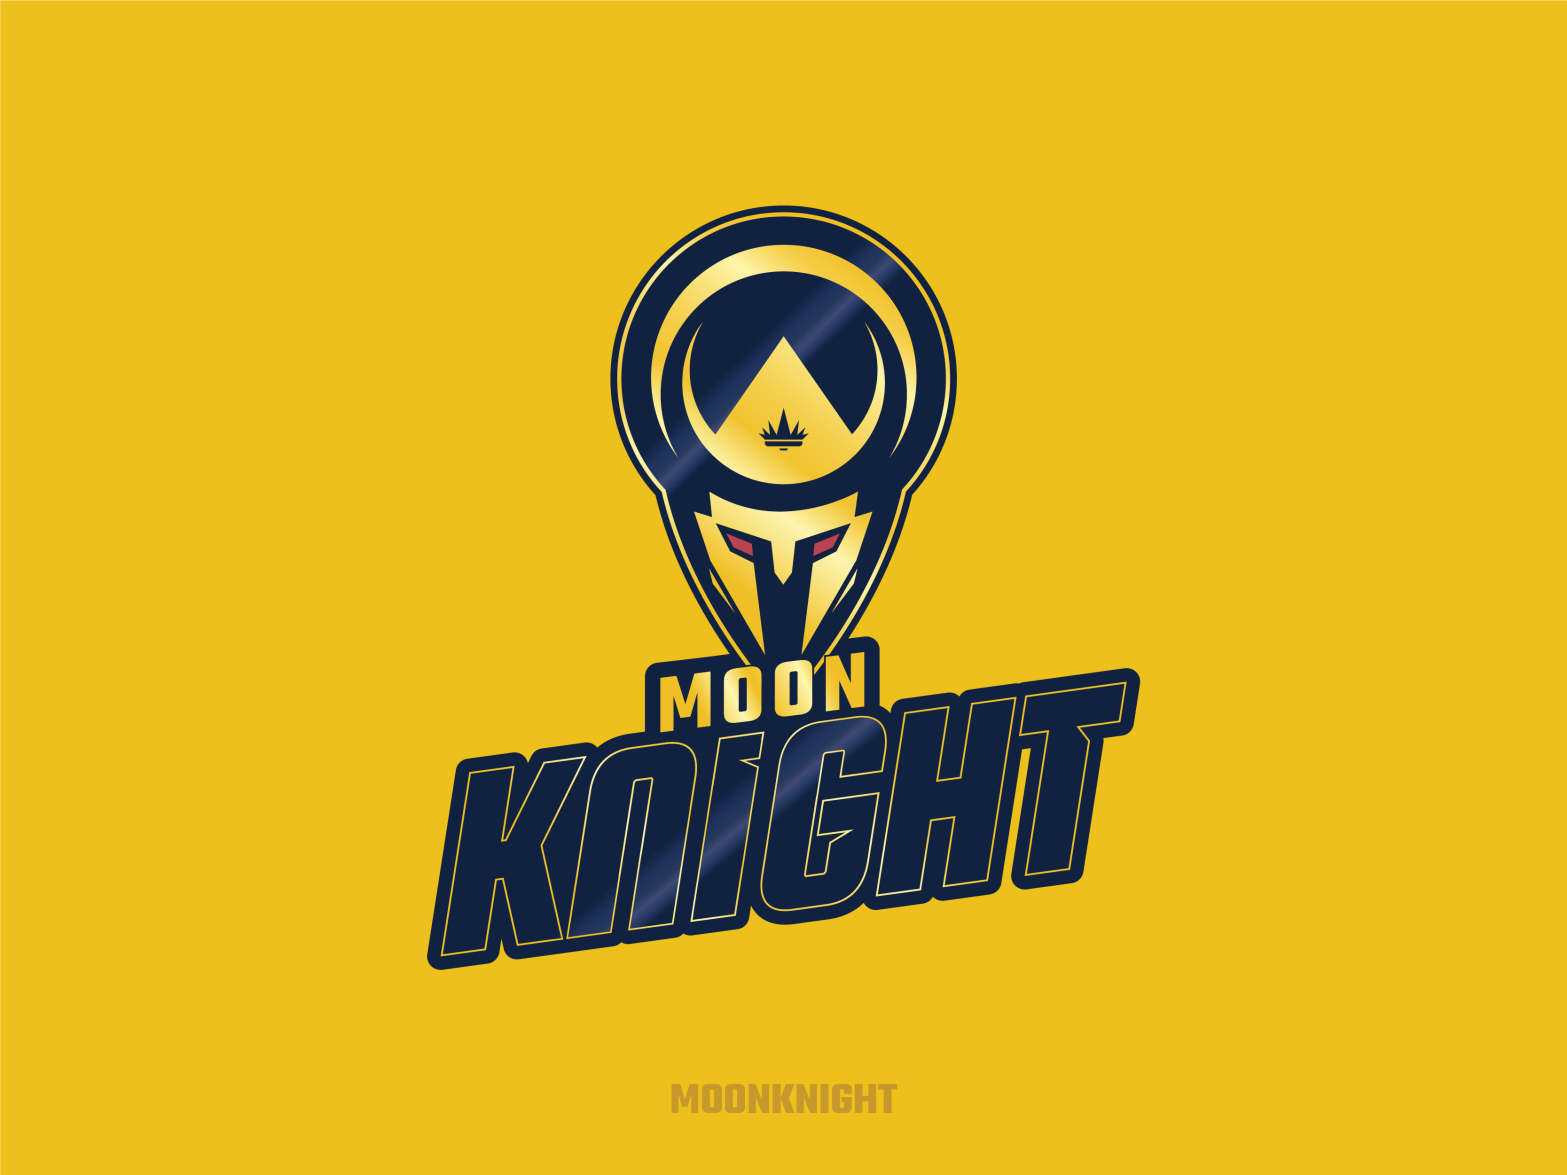 Moon knight logo HD wallpaper | Pxfuel